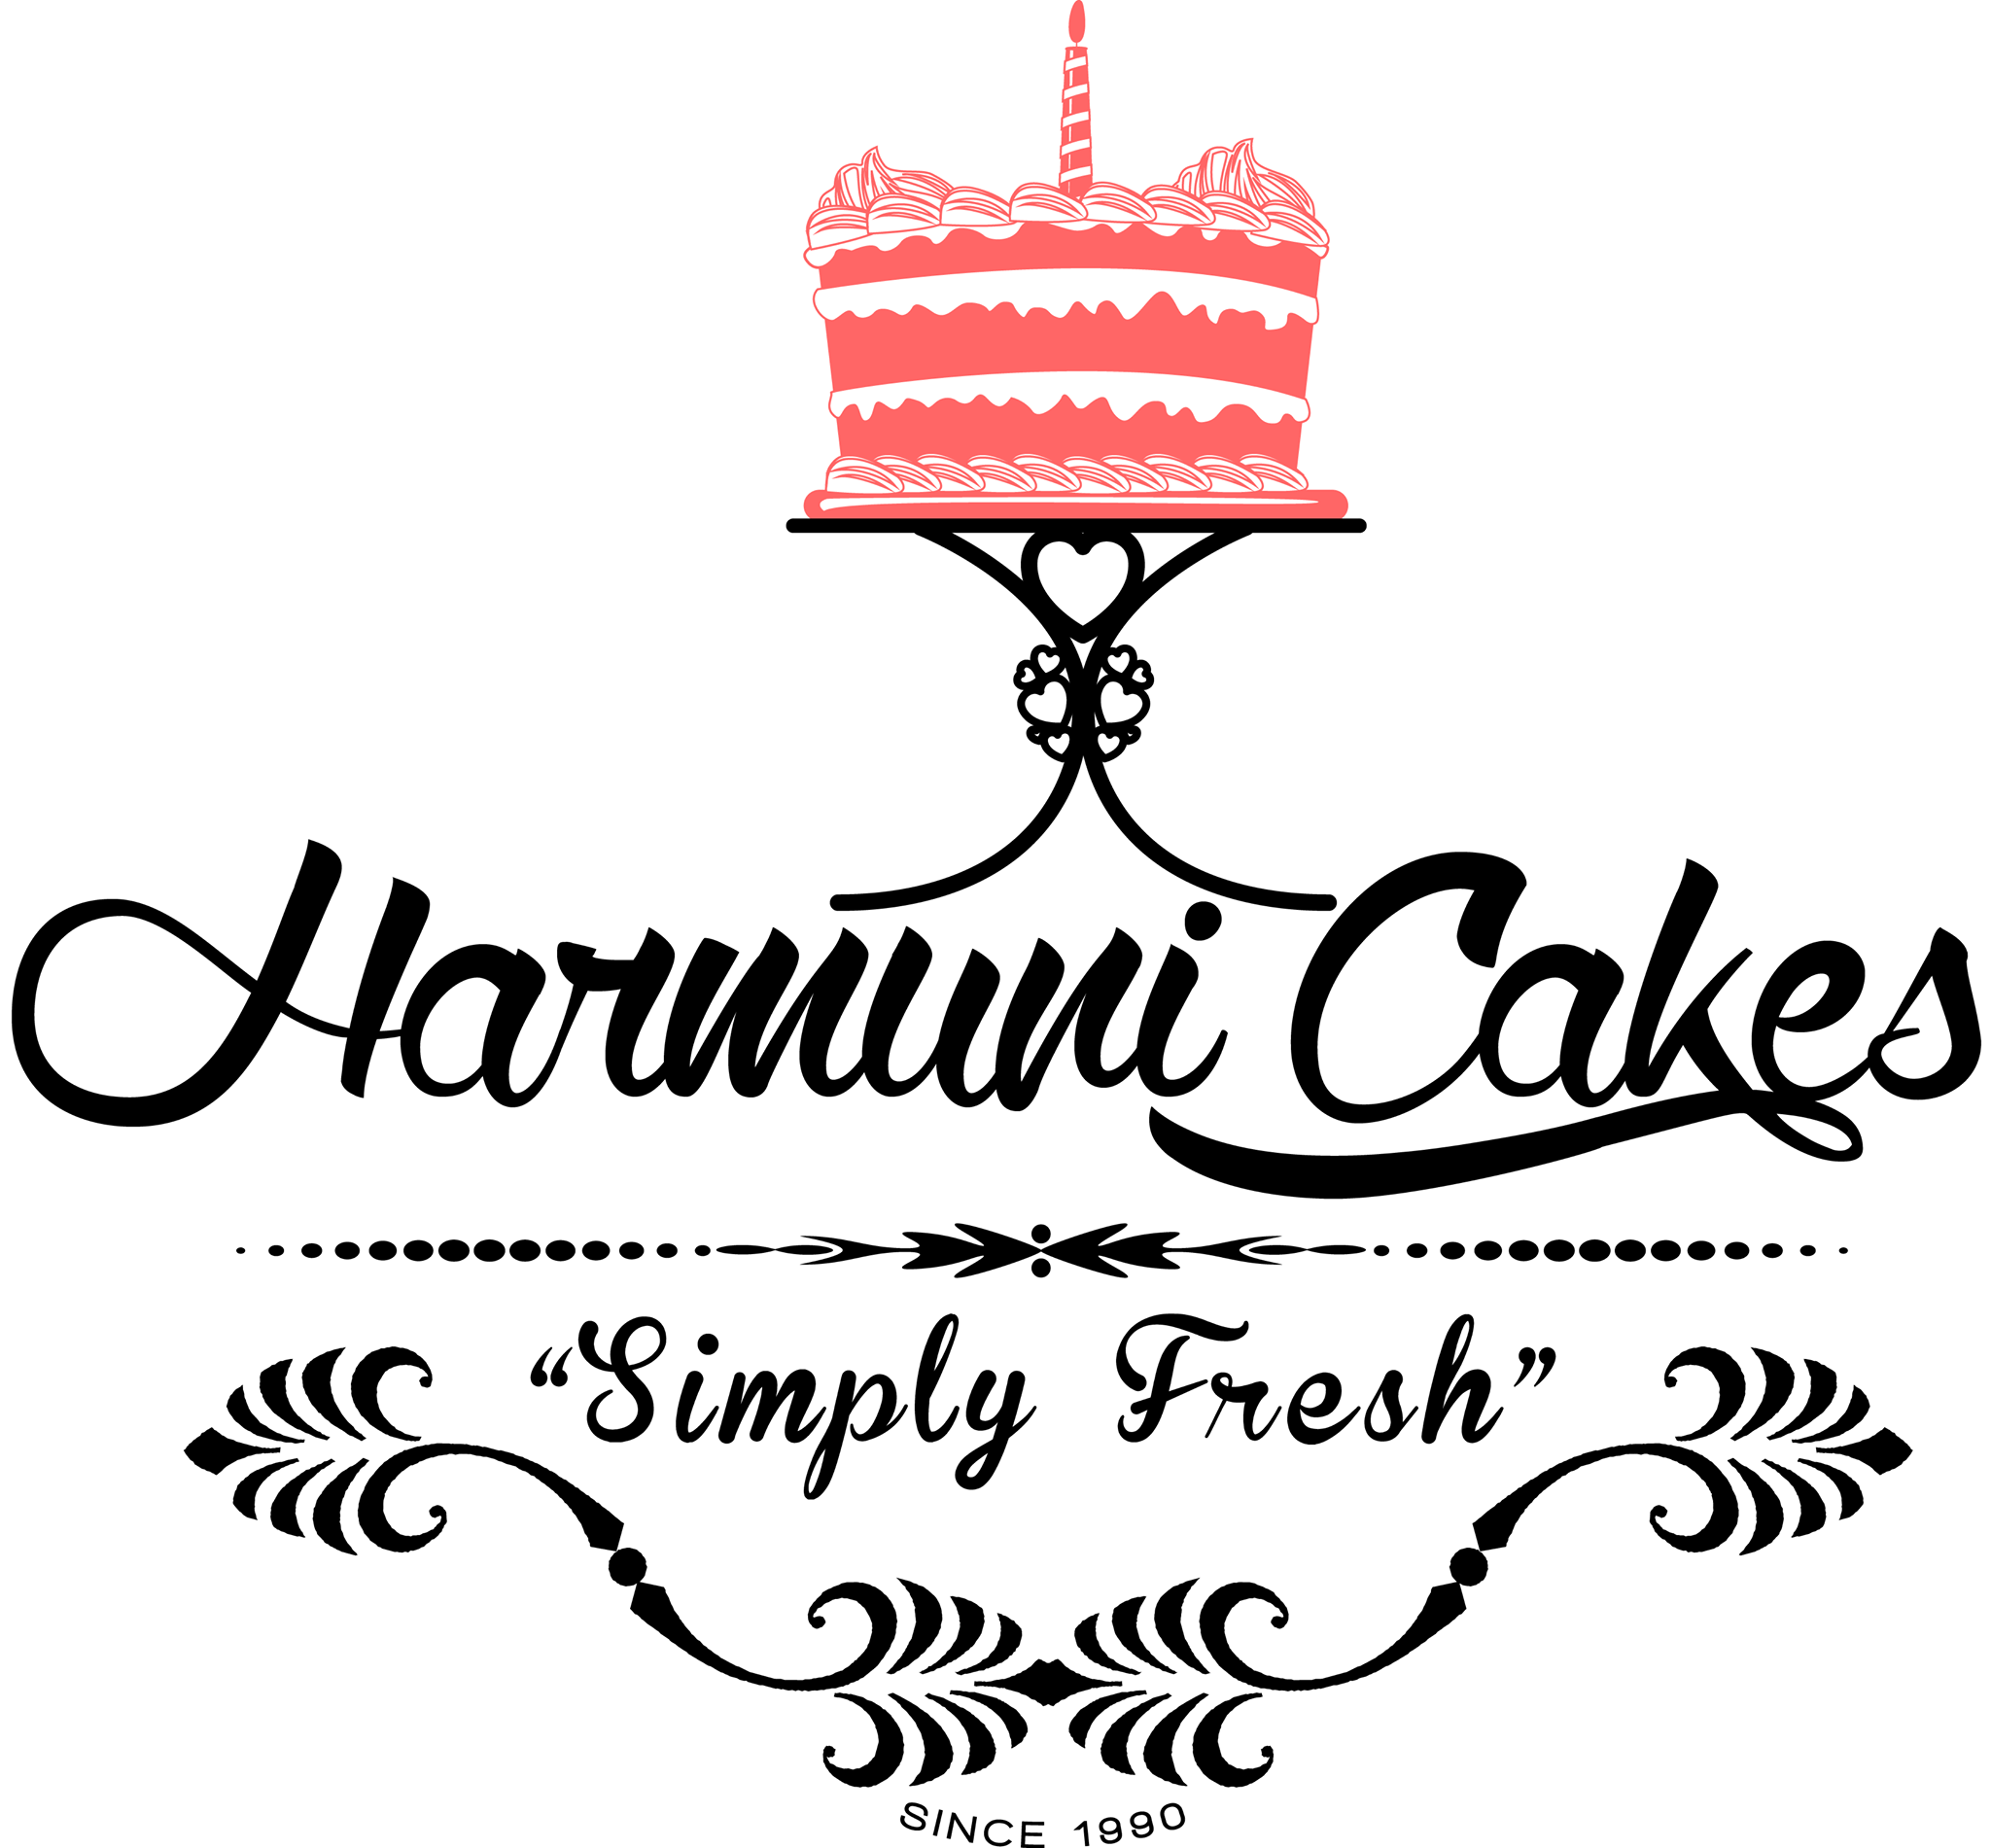 Harmuni Bakery and Cooking Classes Logo